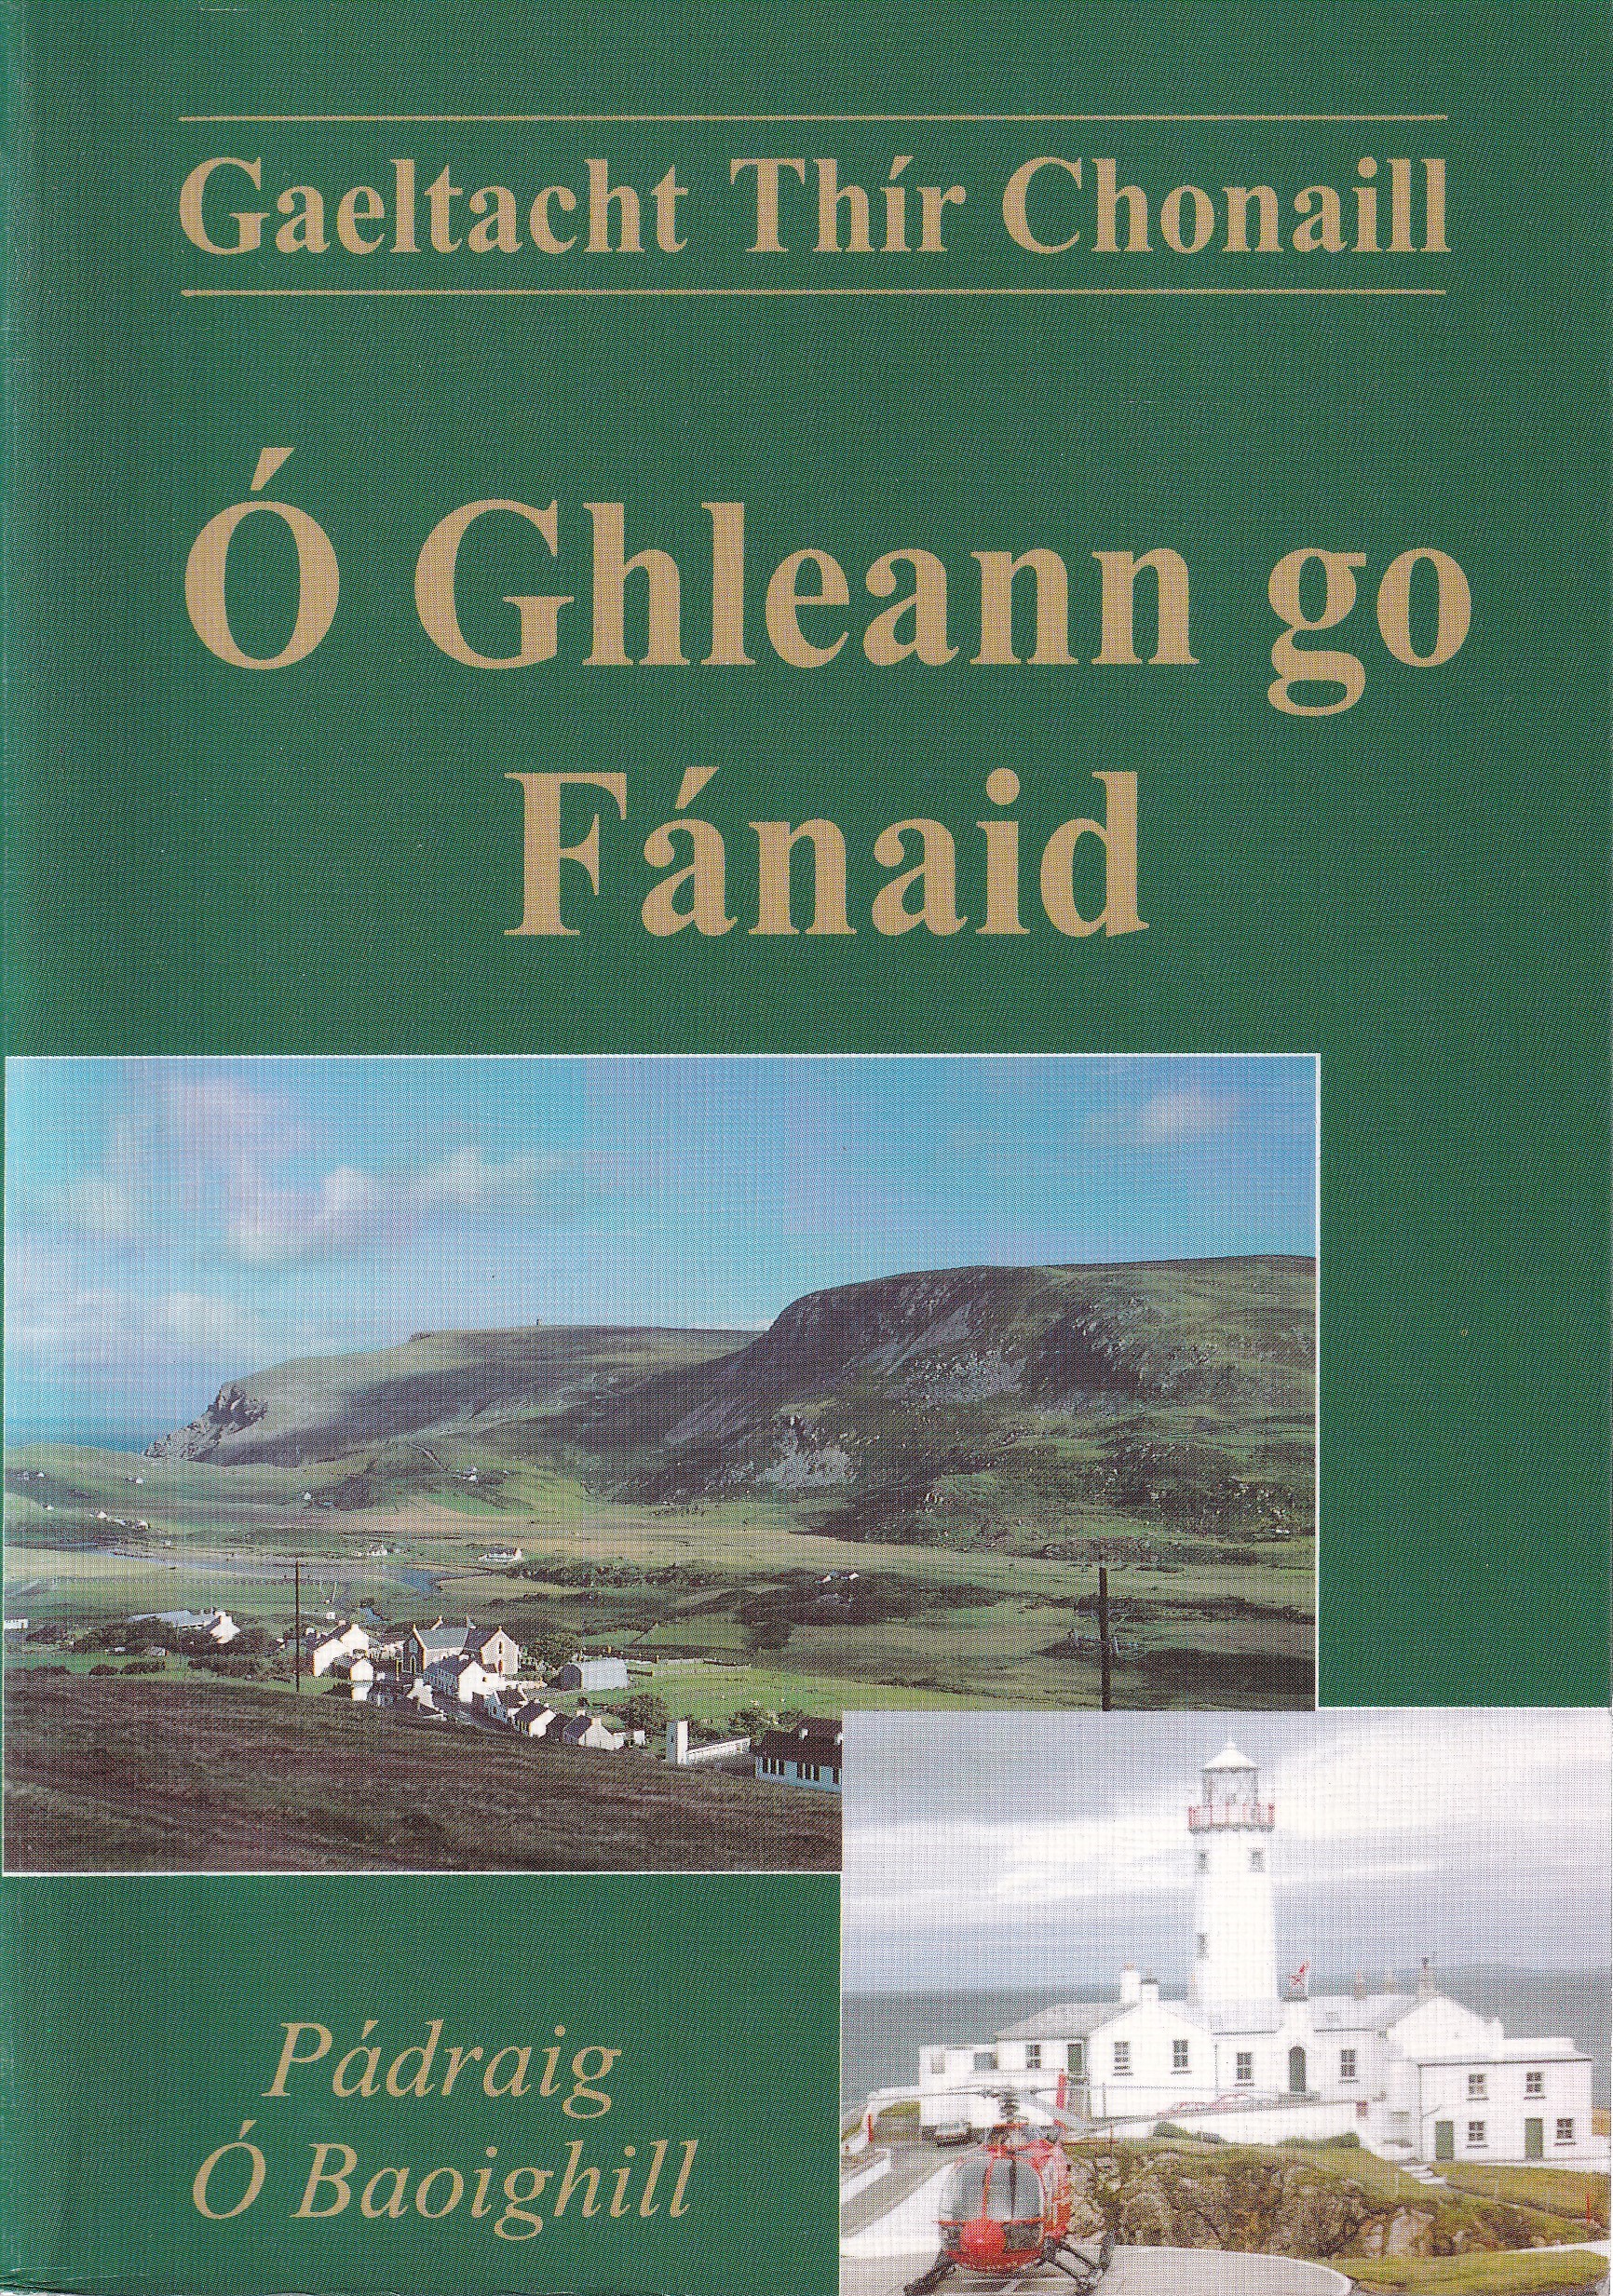 Gaeltach Thír Chonaill: Ó Ghleann go Fánaid by Pádraig Ó Baoighill